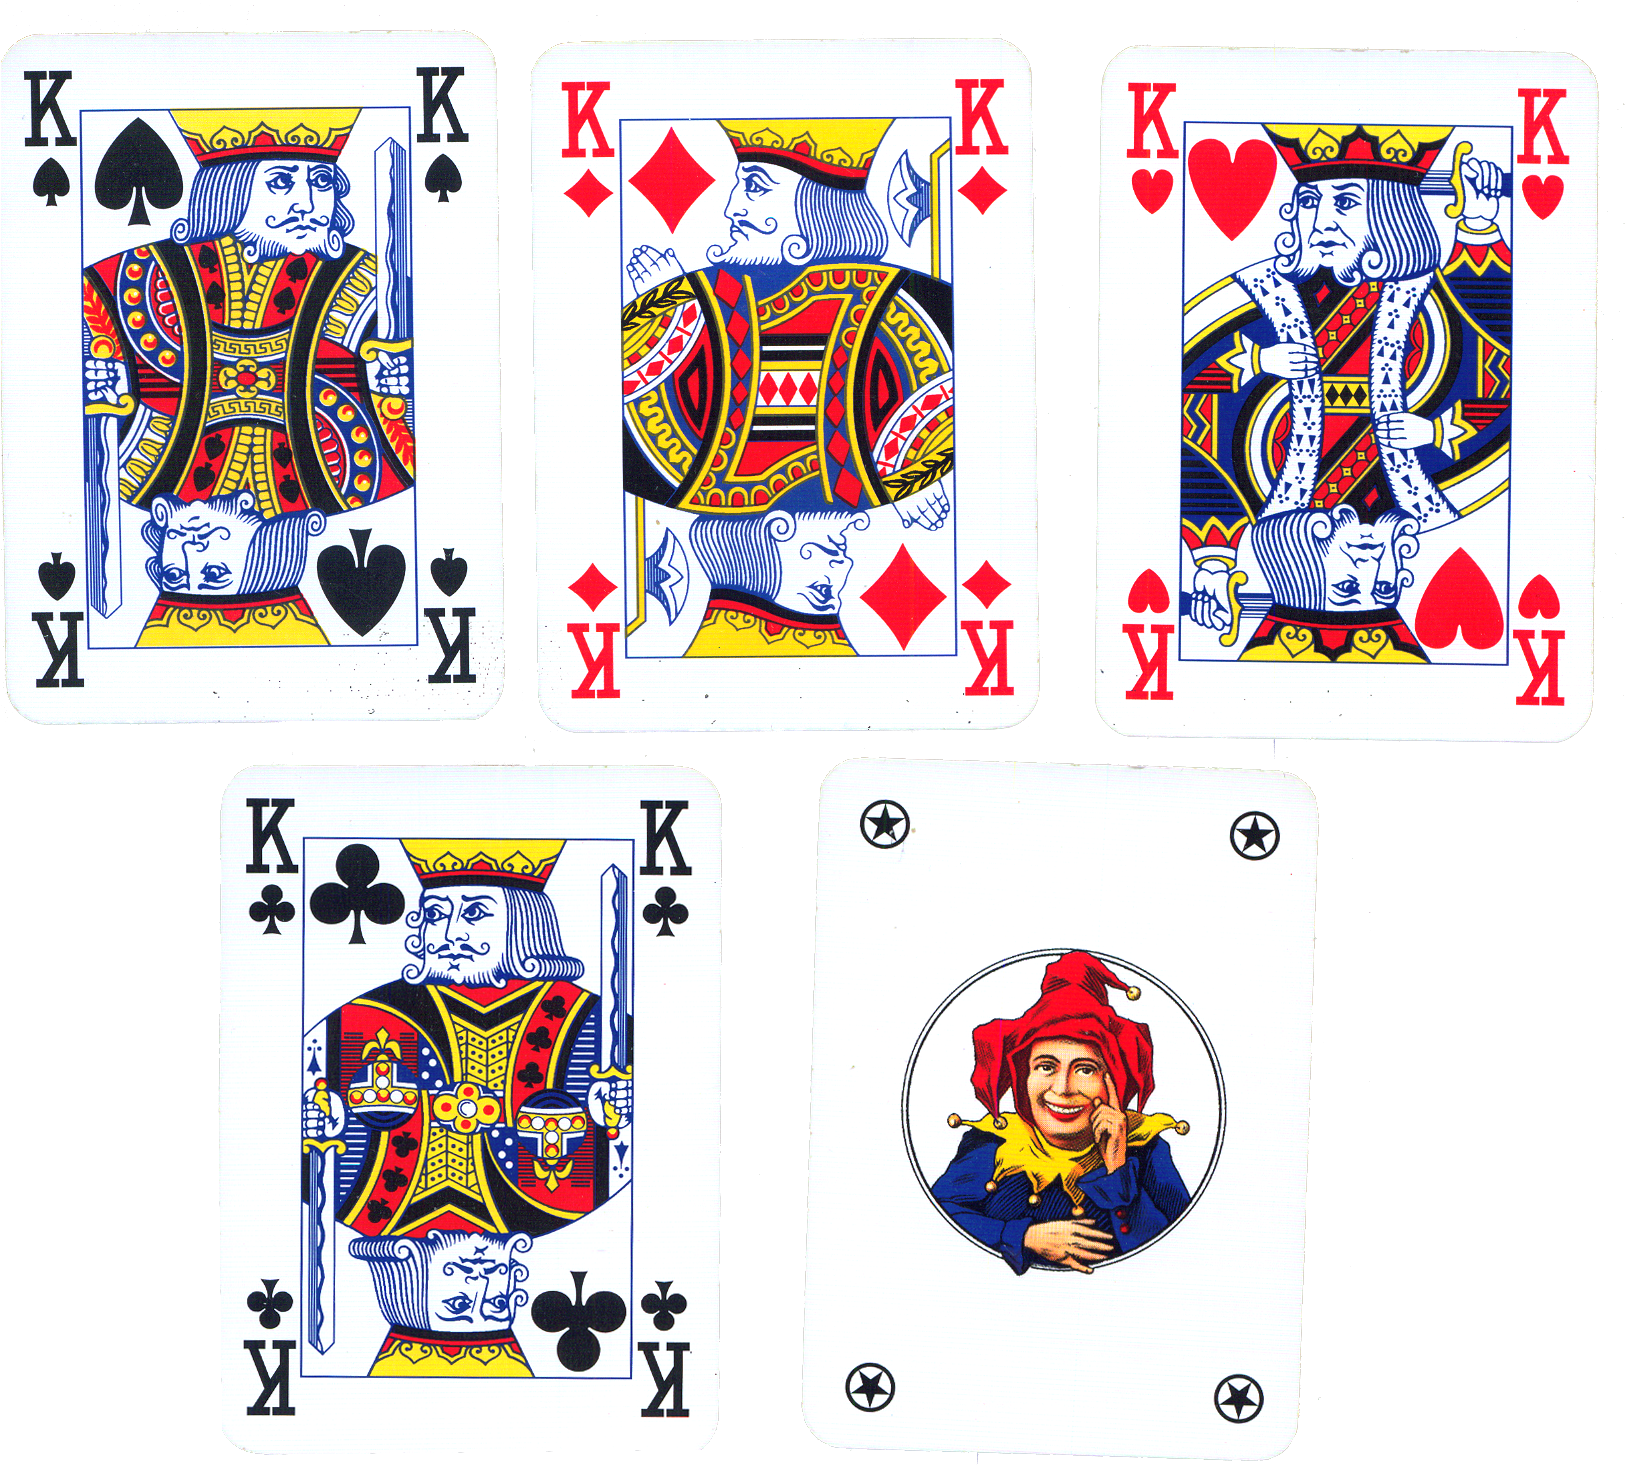 52 игральных карты. Колода карт 52 Poker playing Cards Standard. Колода карт короля колода карт Король. Джокер в карточной колоде. Обычные игральныеткарты.